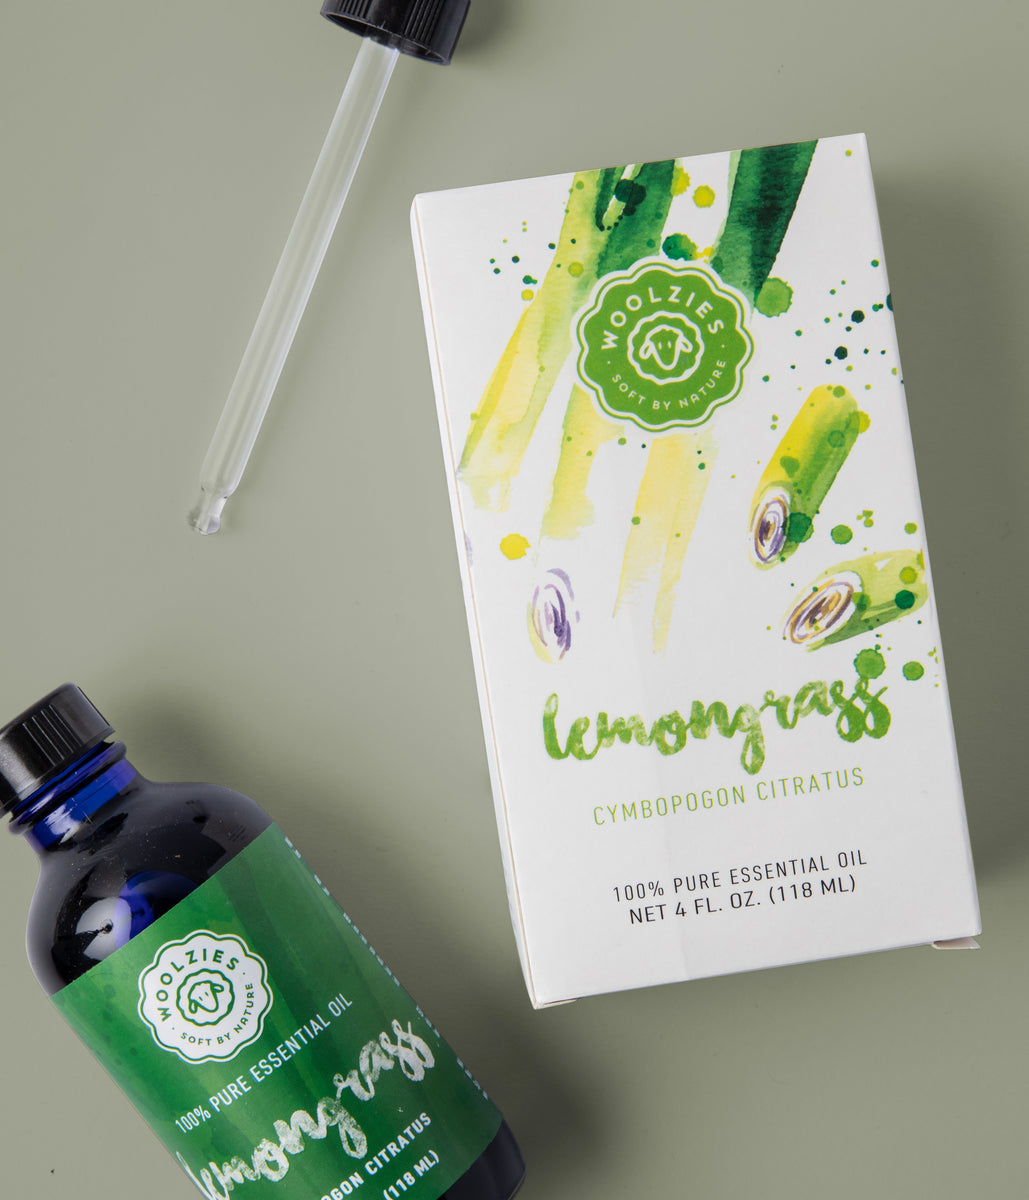 Lemongrass and Jasmine Essential Oil Blend 1/2 Oz Bottle 